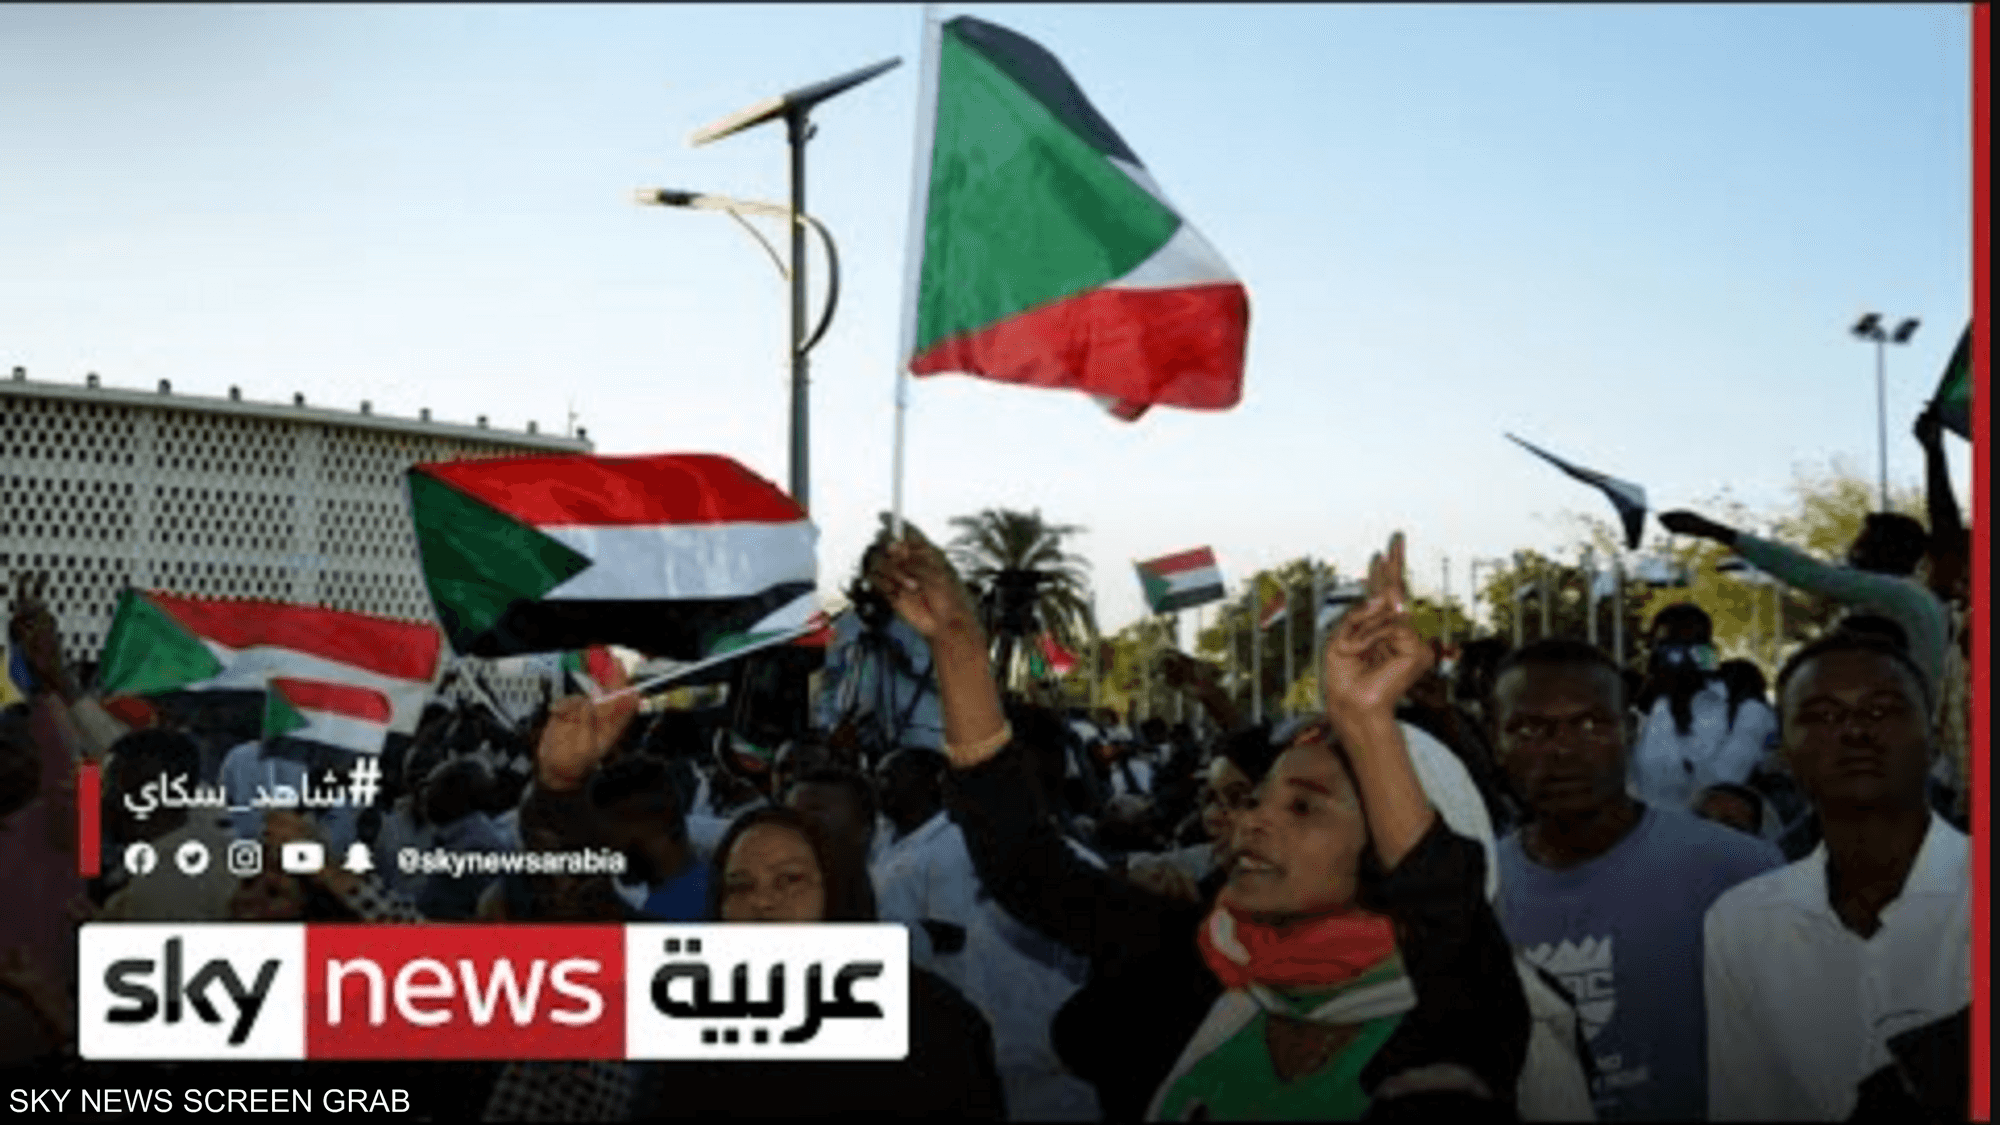 الاتحاد الإفريقي يرحب بالإفراج عن معتقلين في السودان